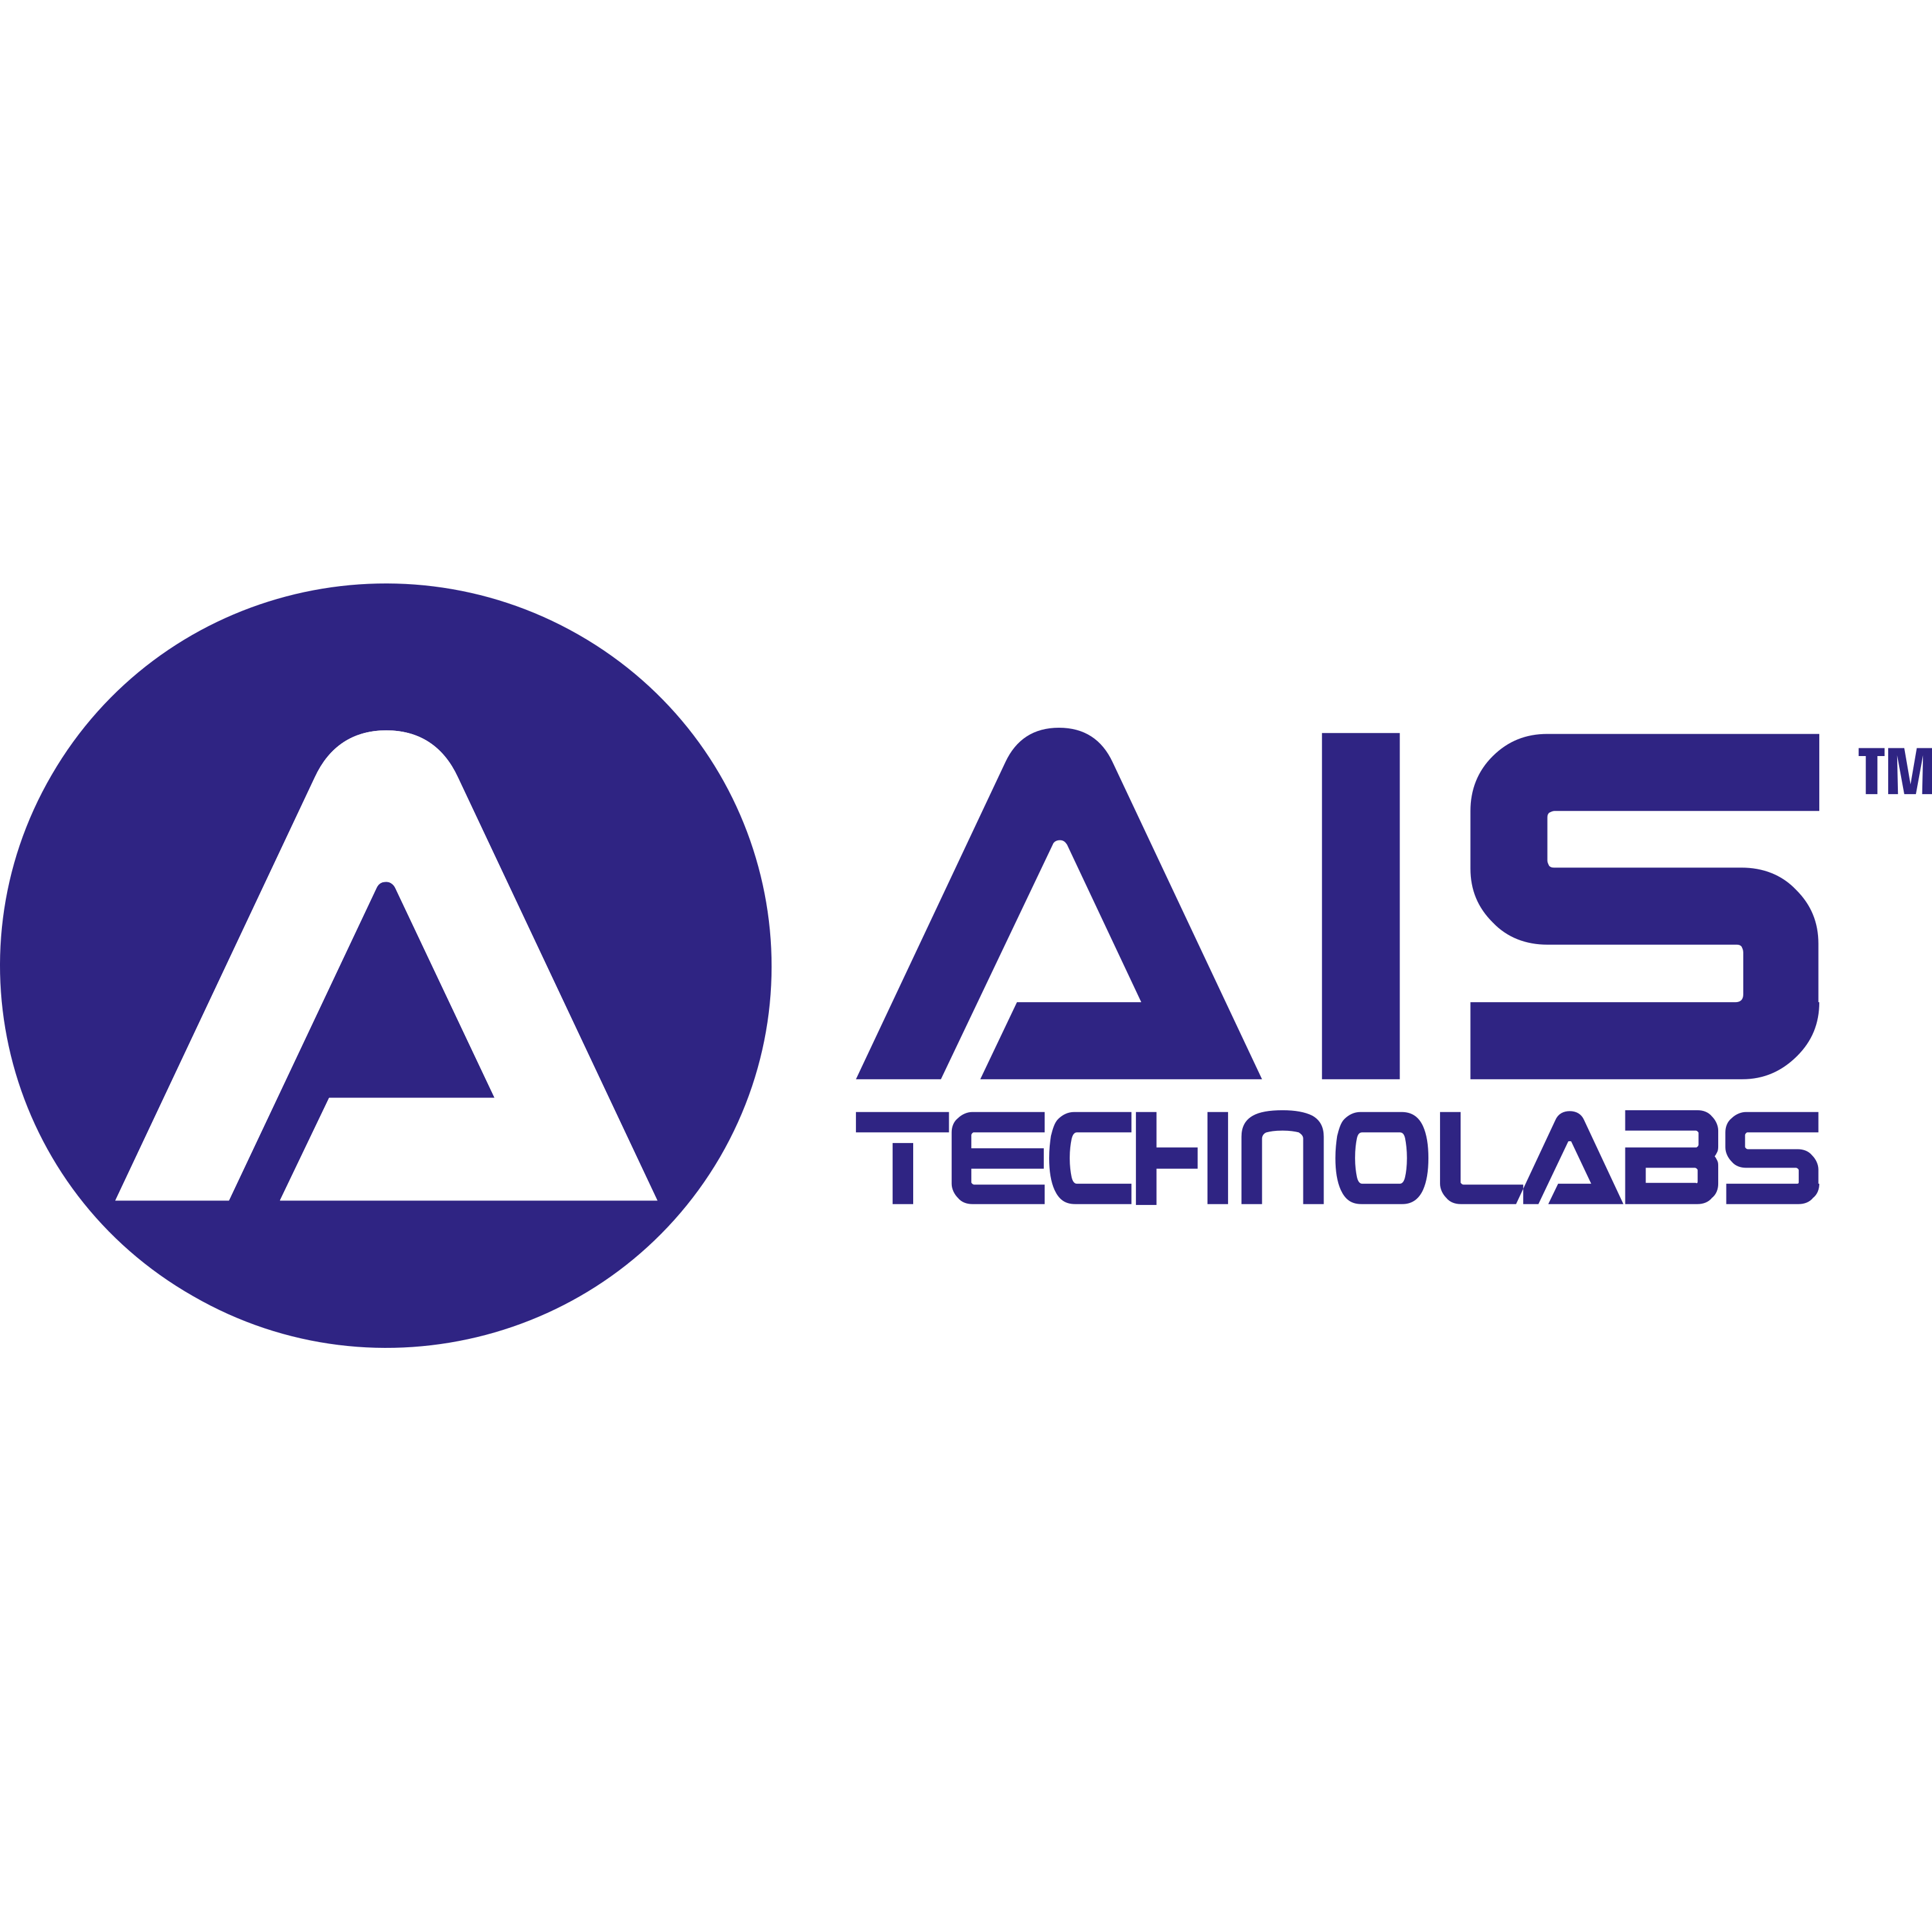 Ais Technolabs Logo  Transparent Image